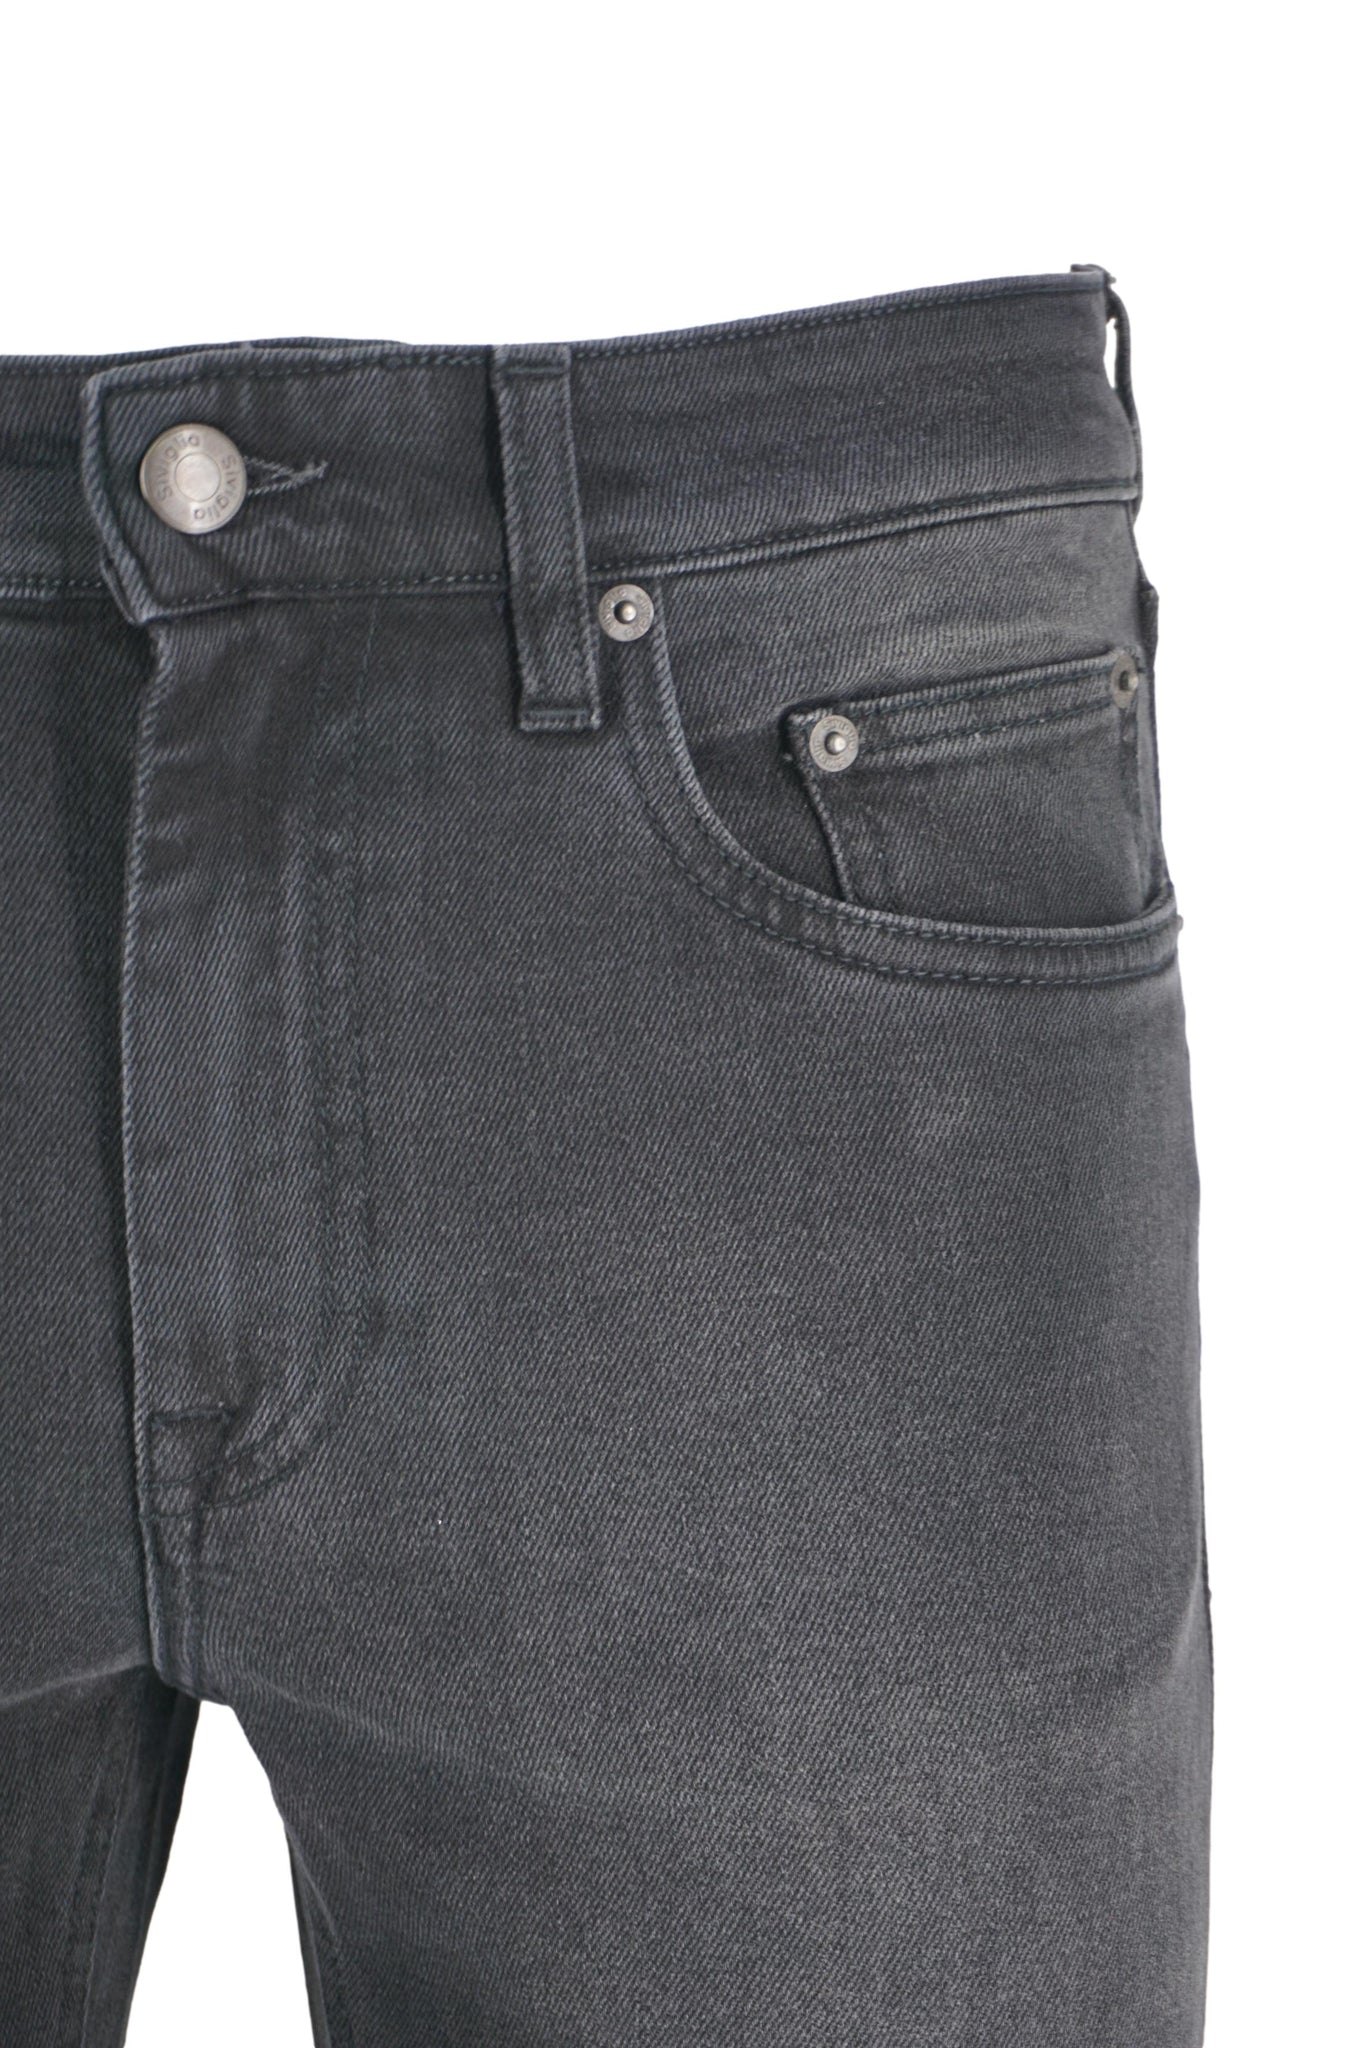 Jeans Scuro Slim Fit / Nero - Ideal Moda